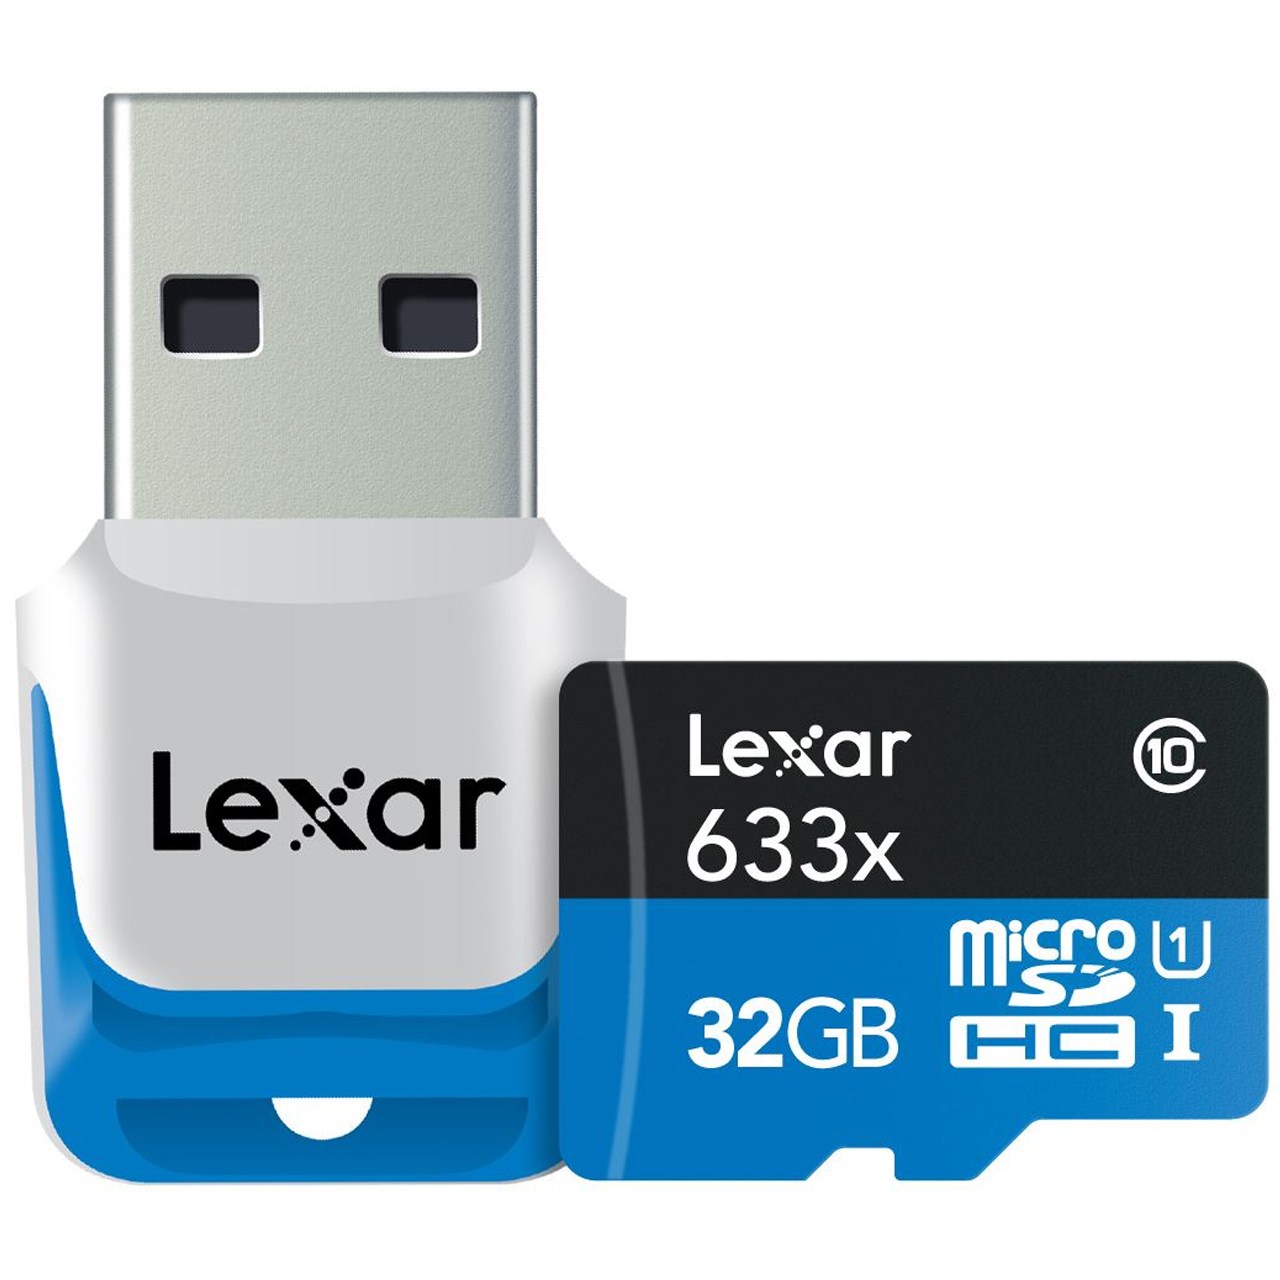 کارت حافظه microSDHC لکسار مدل High-Performance کلاس 10 استاندارد UHS-I U1 سرعت 633X همراه با USB 3.0 ریدر - ظرفیت 32 گیگابایت